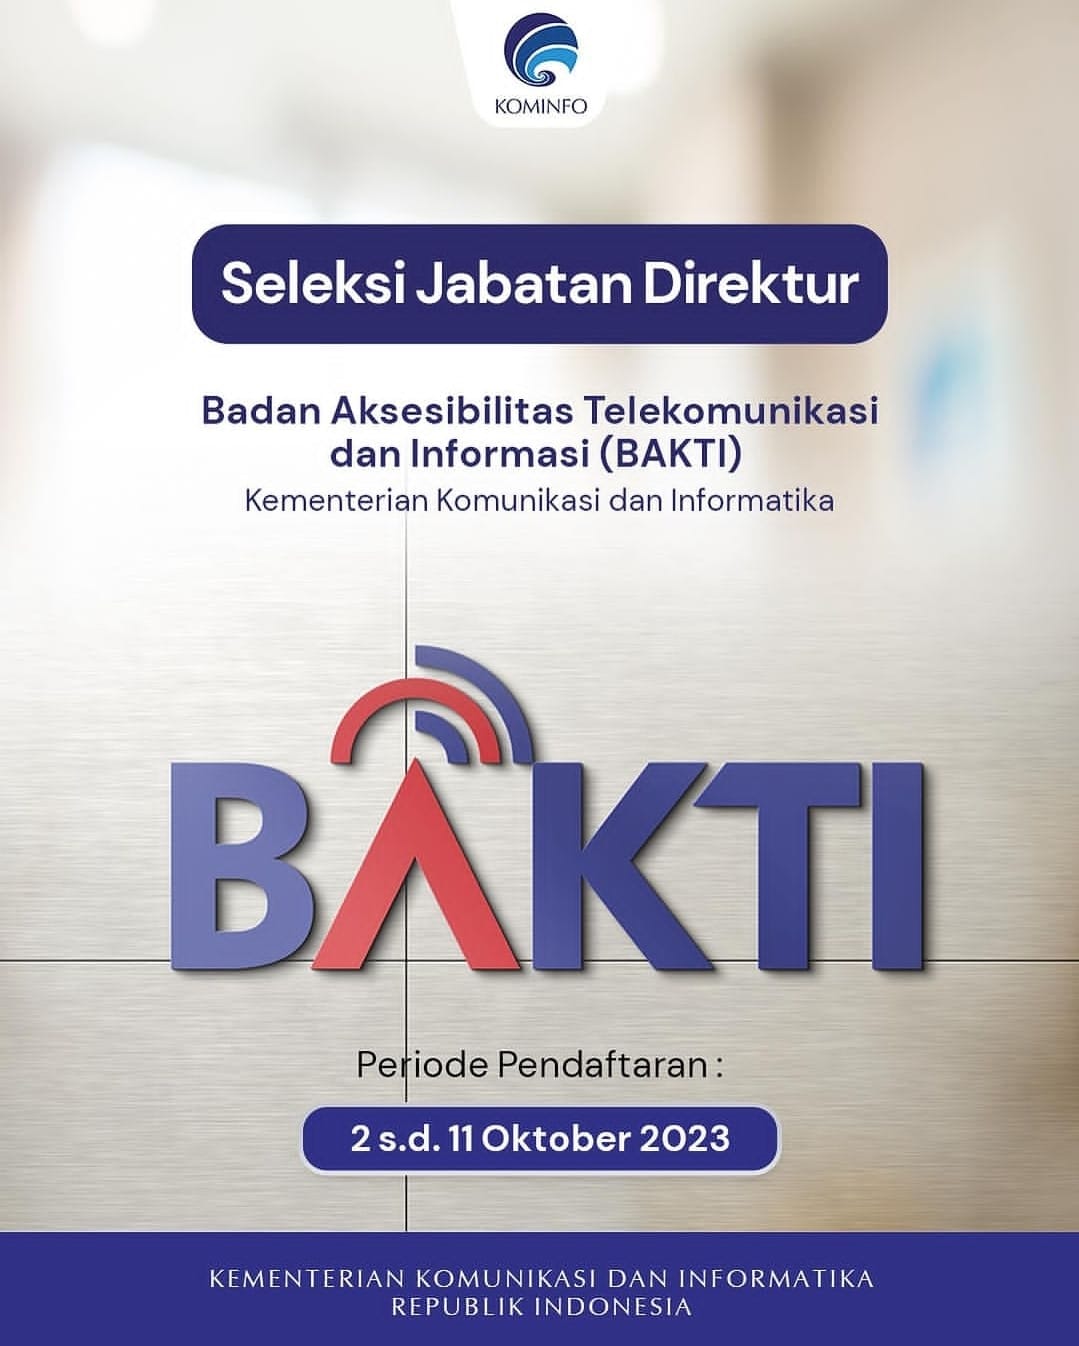 Pengumuman Penting! Kementerian Komunikasi dan Informatika Membuka Lowongan Direktur di BAKTI